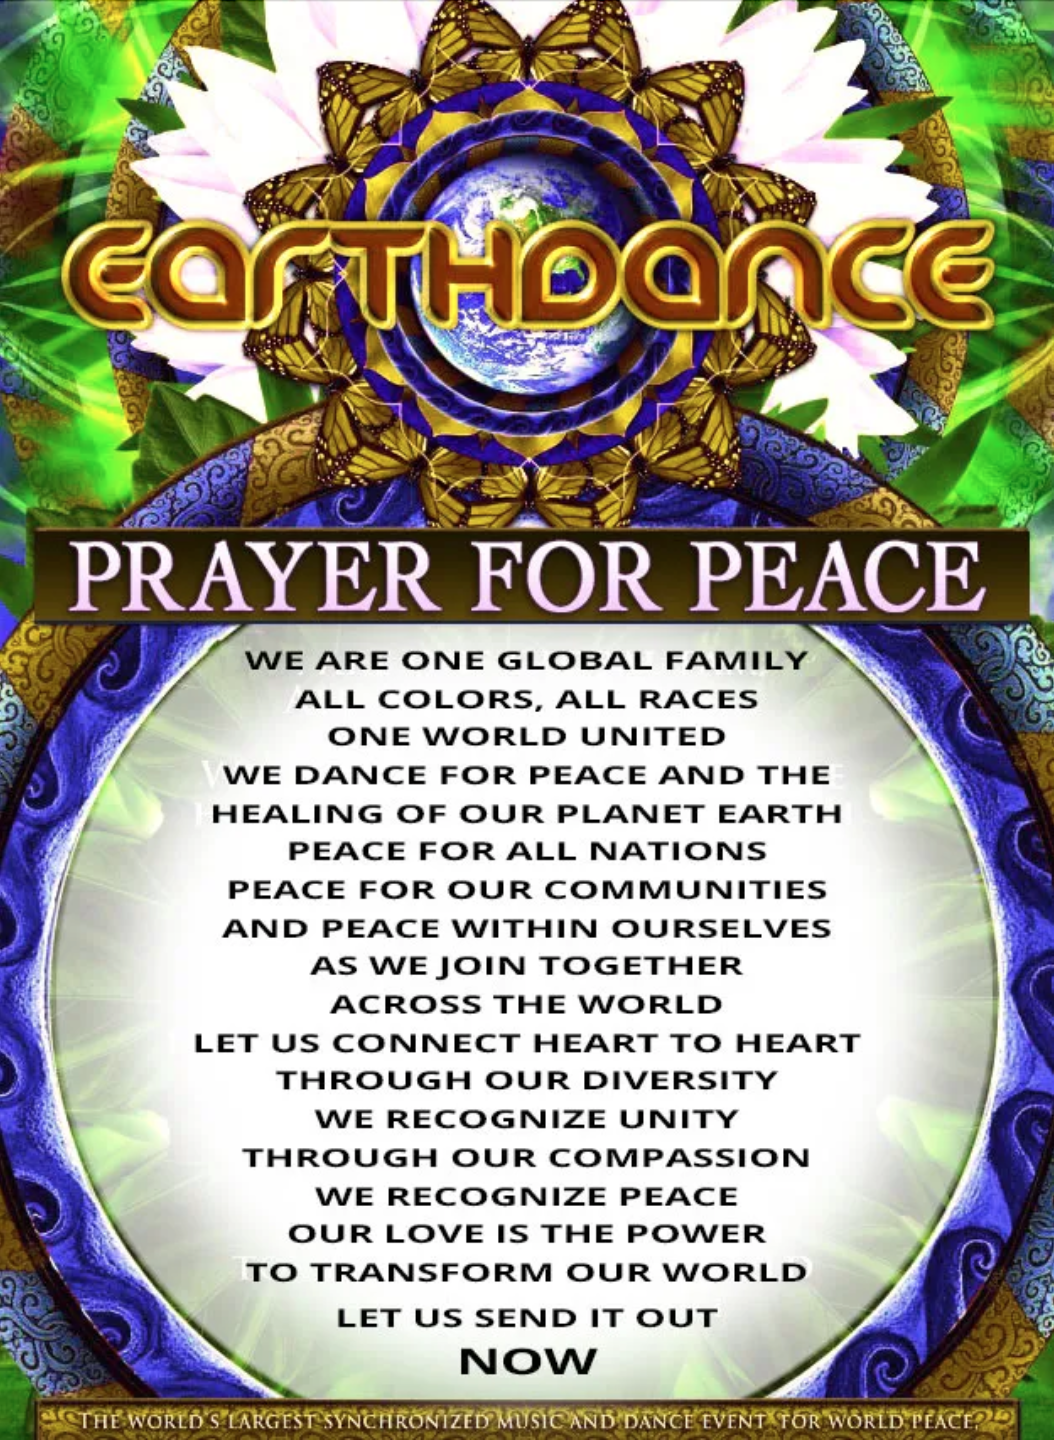 Earthdance prayer for peace